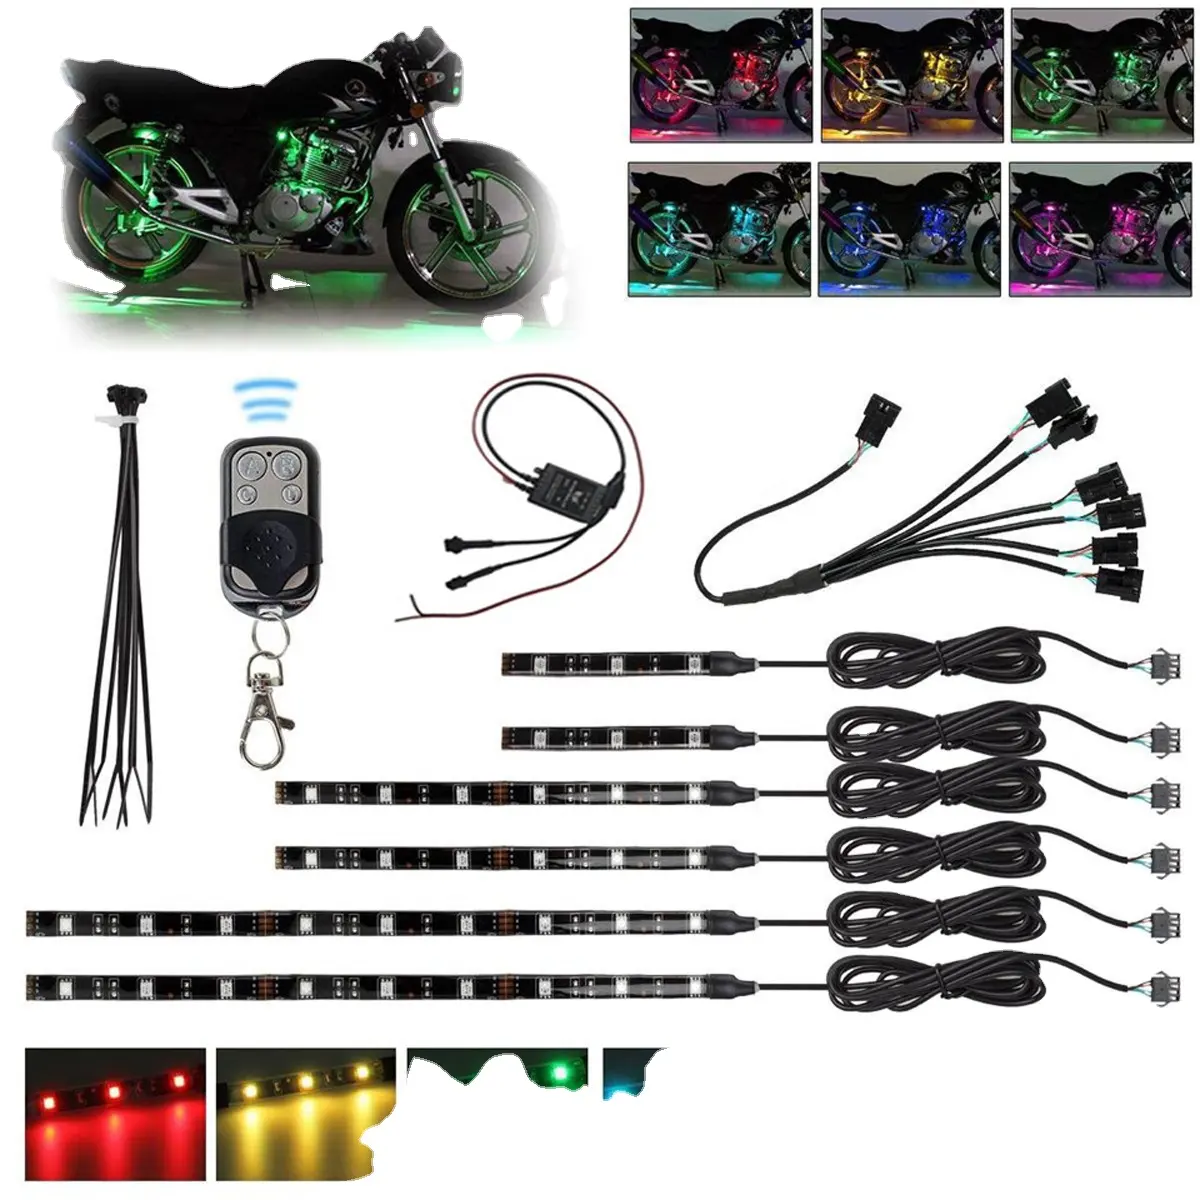 ชุดแถบไฟ LED รถจักรยานยนต์,แถบไฟ LED หลากสี RGB สำหรับตกแต่งรถจักรยานยนต์พร้อมรีโมทควบคุมจำนวน6ชิ้น